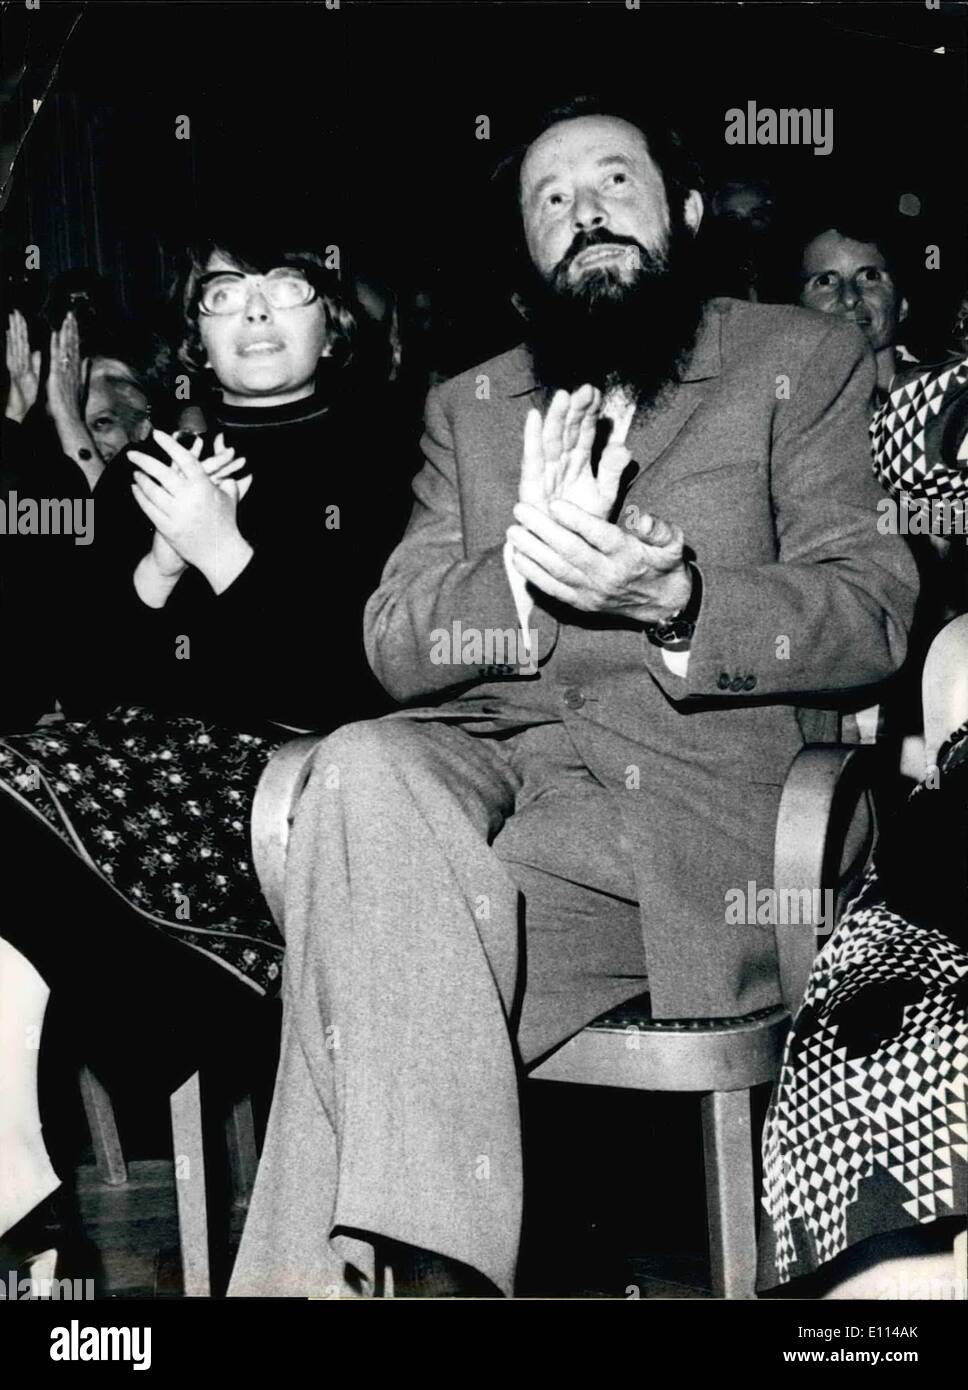 Agosto 08, 1975 - Solzhenitsyn in Svizzera: Alexander Solzhenitsyn in società con sua moglie durante una manifestazione culturale in Foto Stock